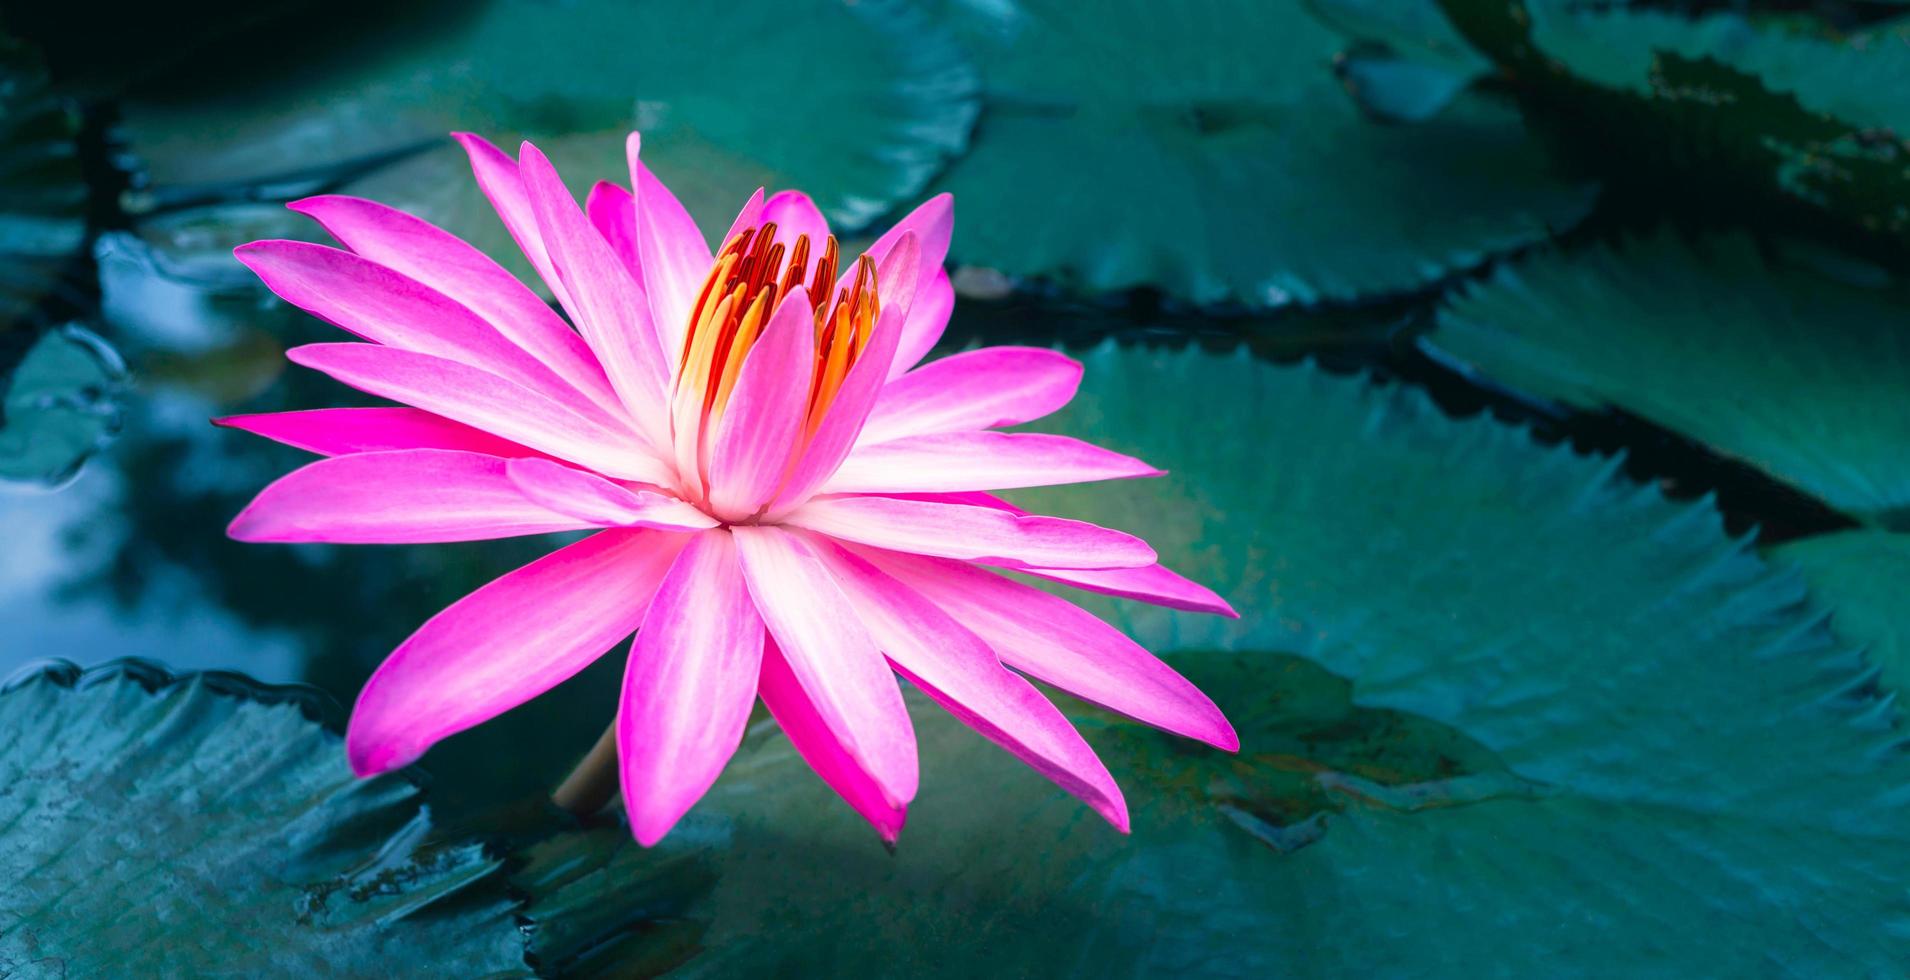 Nahaufnahme der schönen rosafarbenen Seerose und des Lotusblattes im blauen Teich. Lotusblumenhintergrund foto